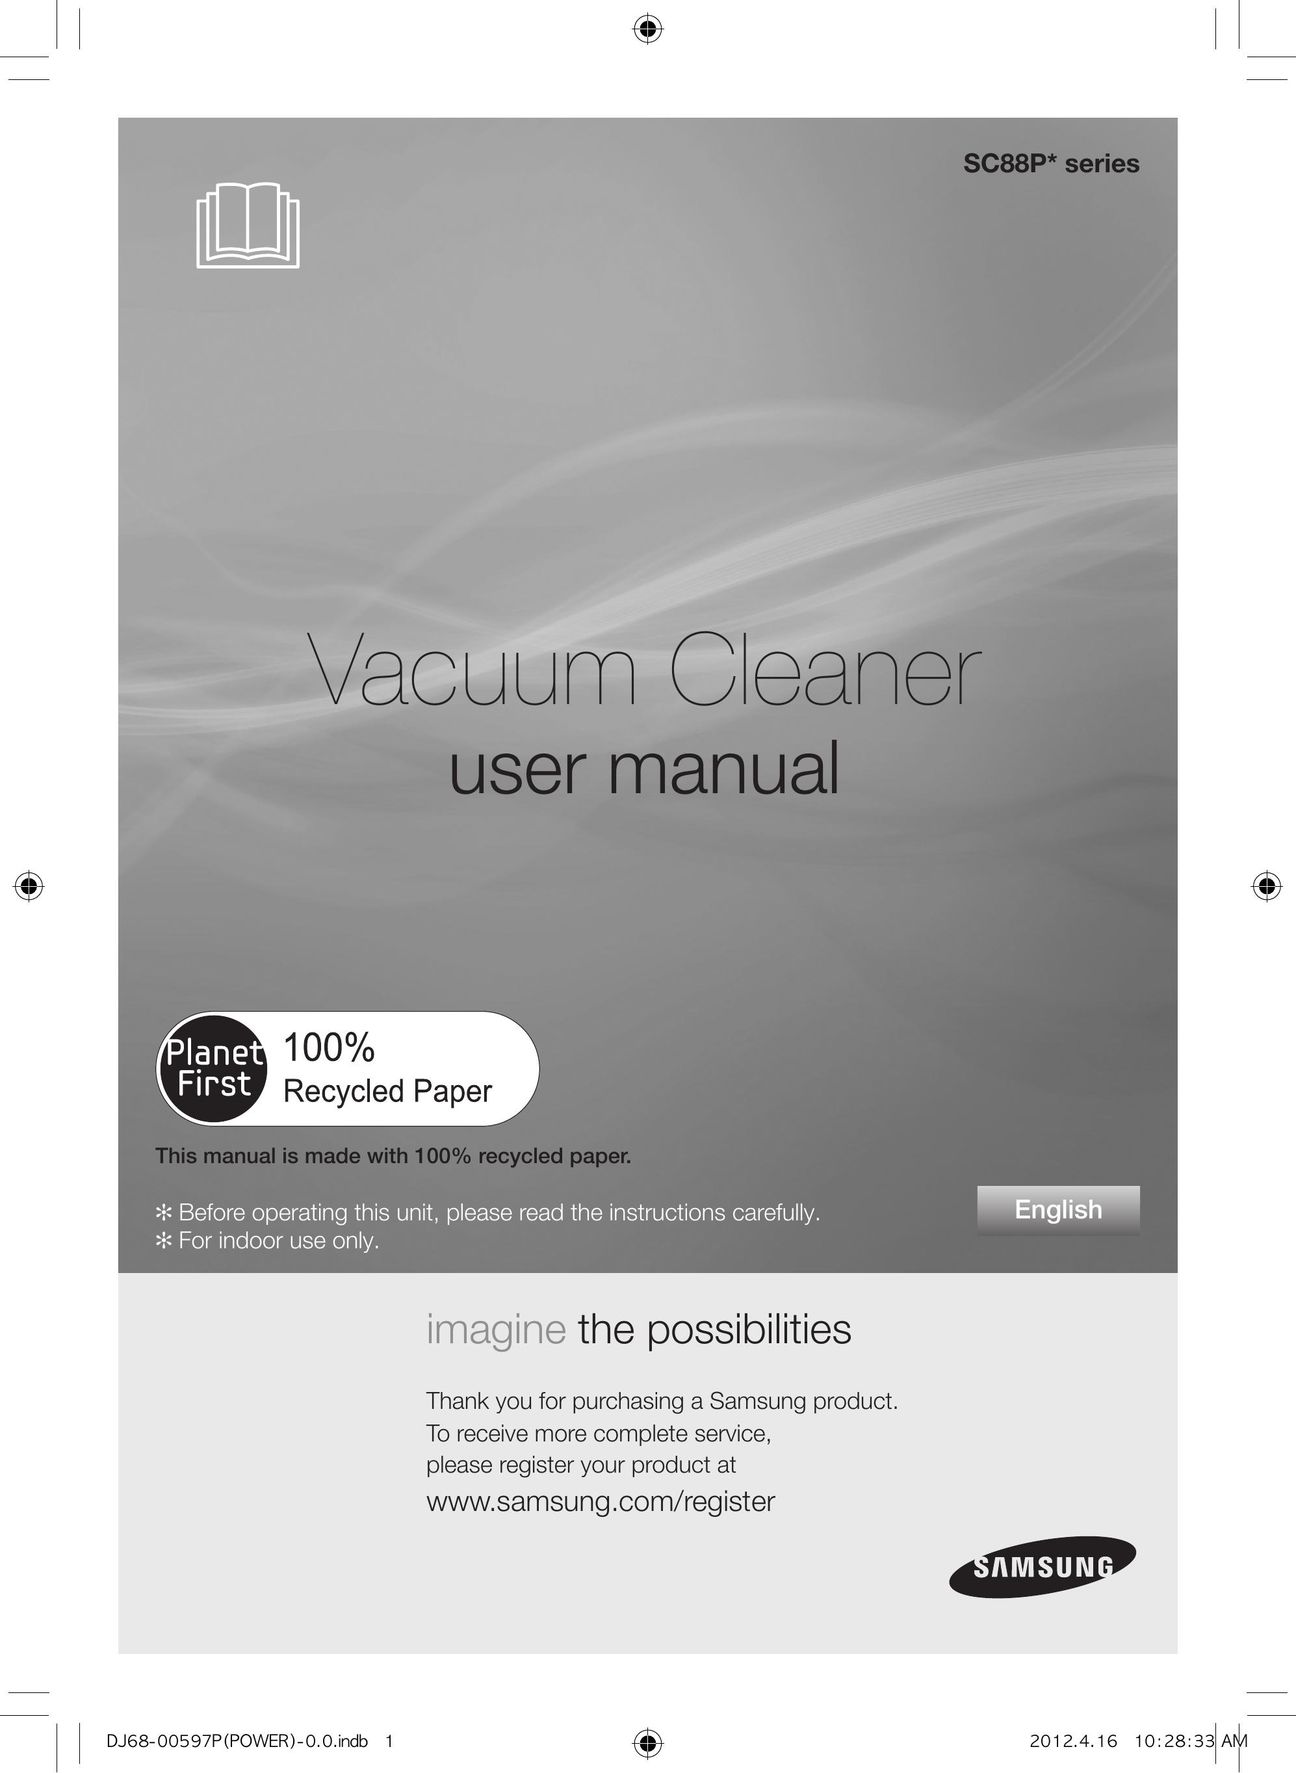 Samsung SC88P Vacuum Cleaner User Manual